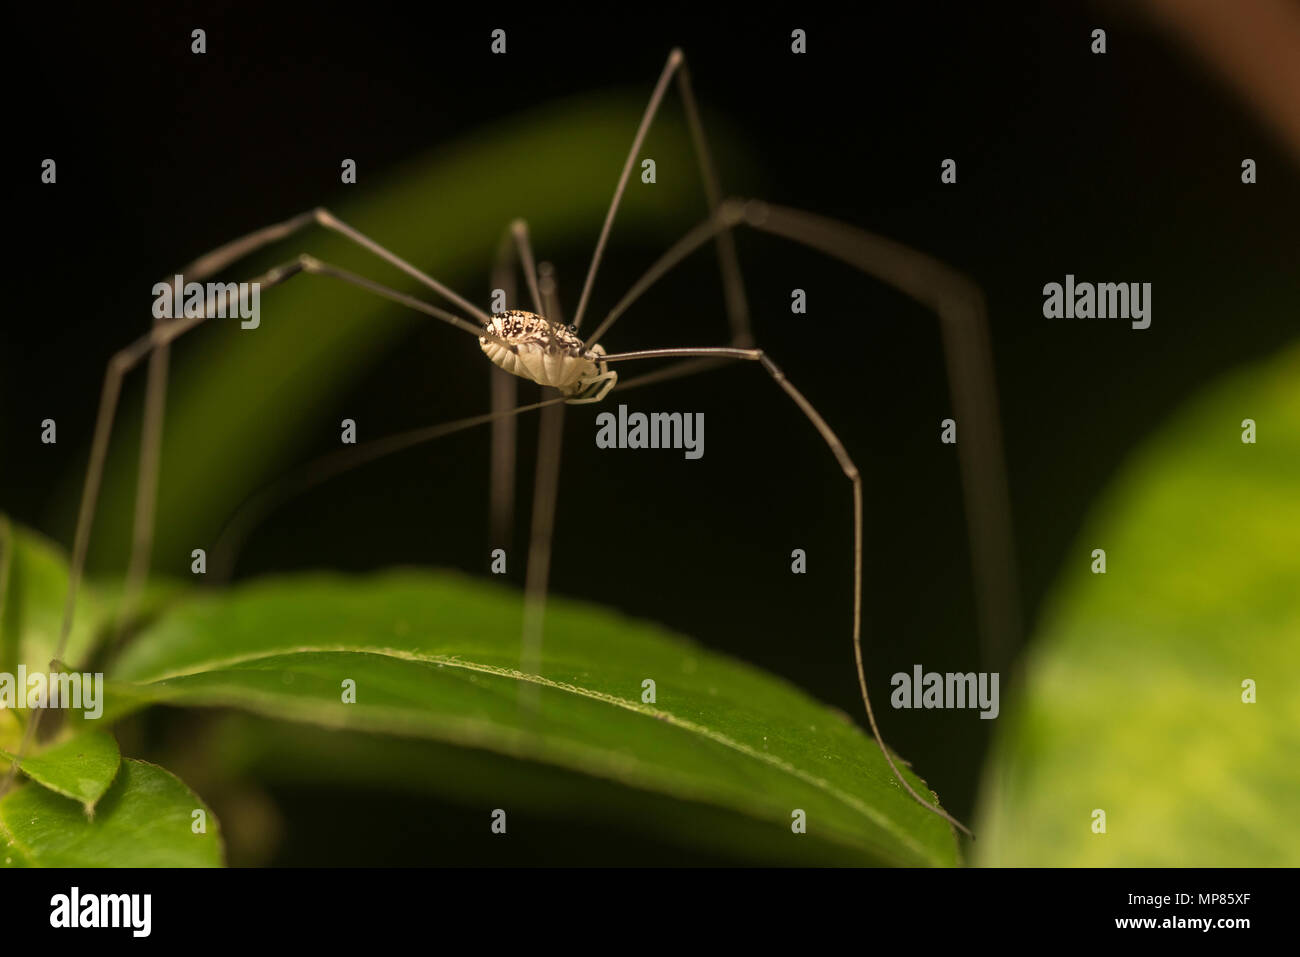 Un daddy longlegs también conocido como harvestman es un tipo de araña estrechamente relacionadas con las arañas. Foto de stock